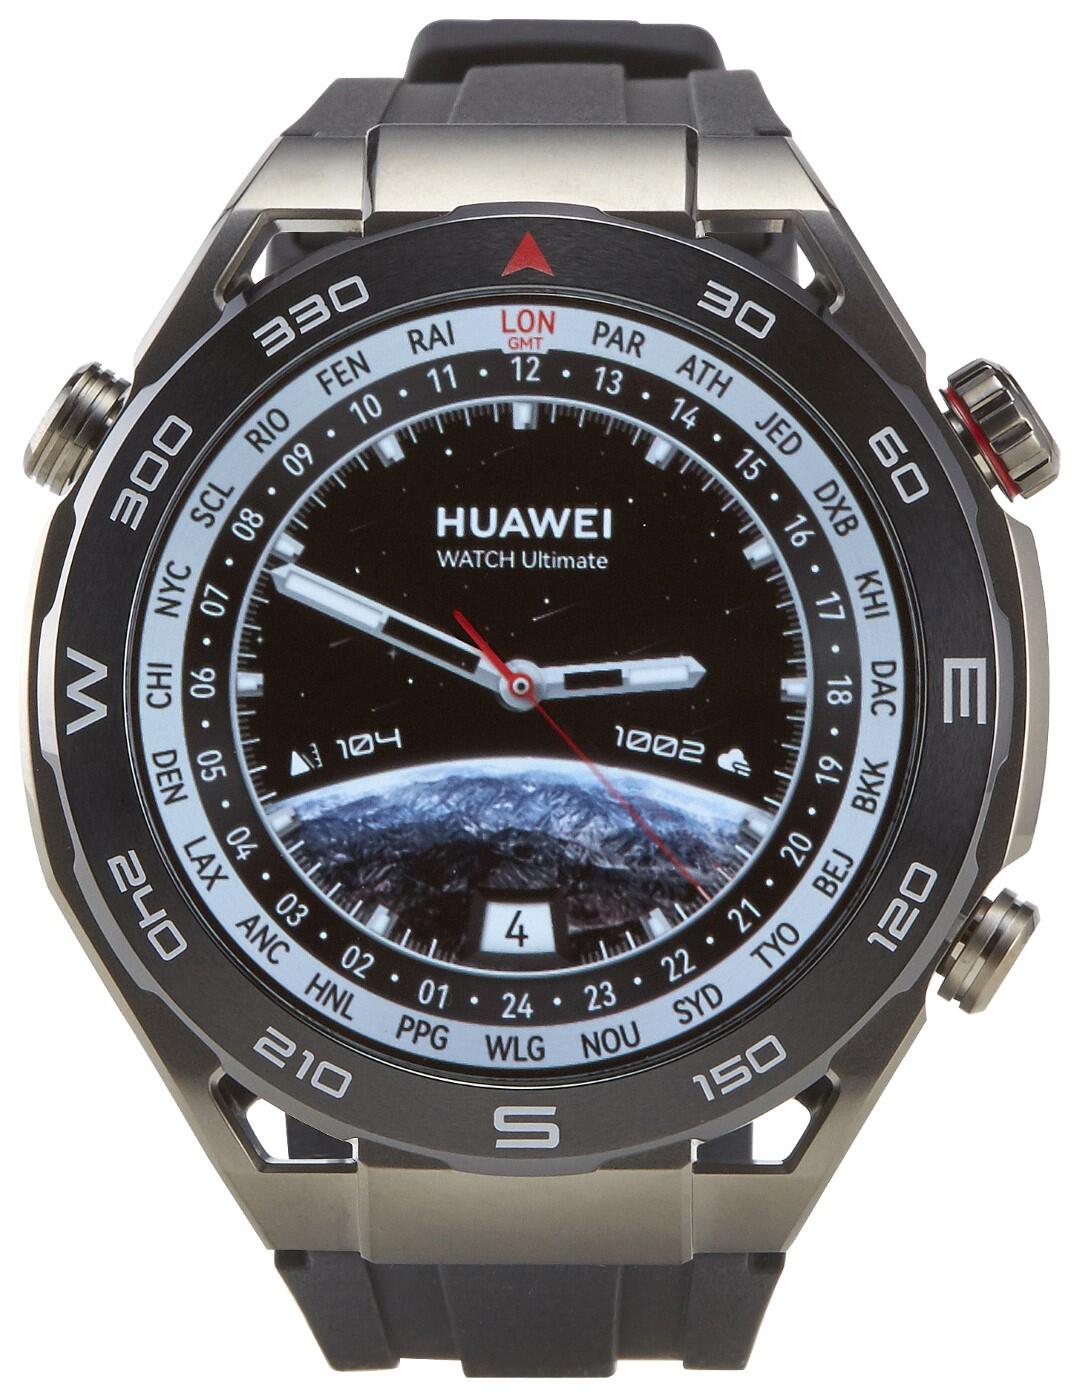 Watch Ultimate Huawei